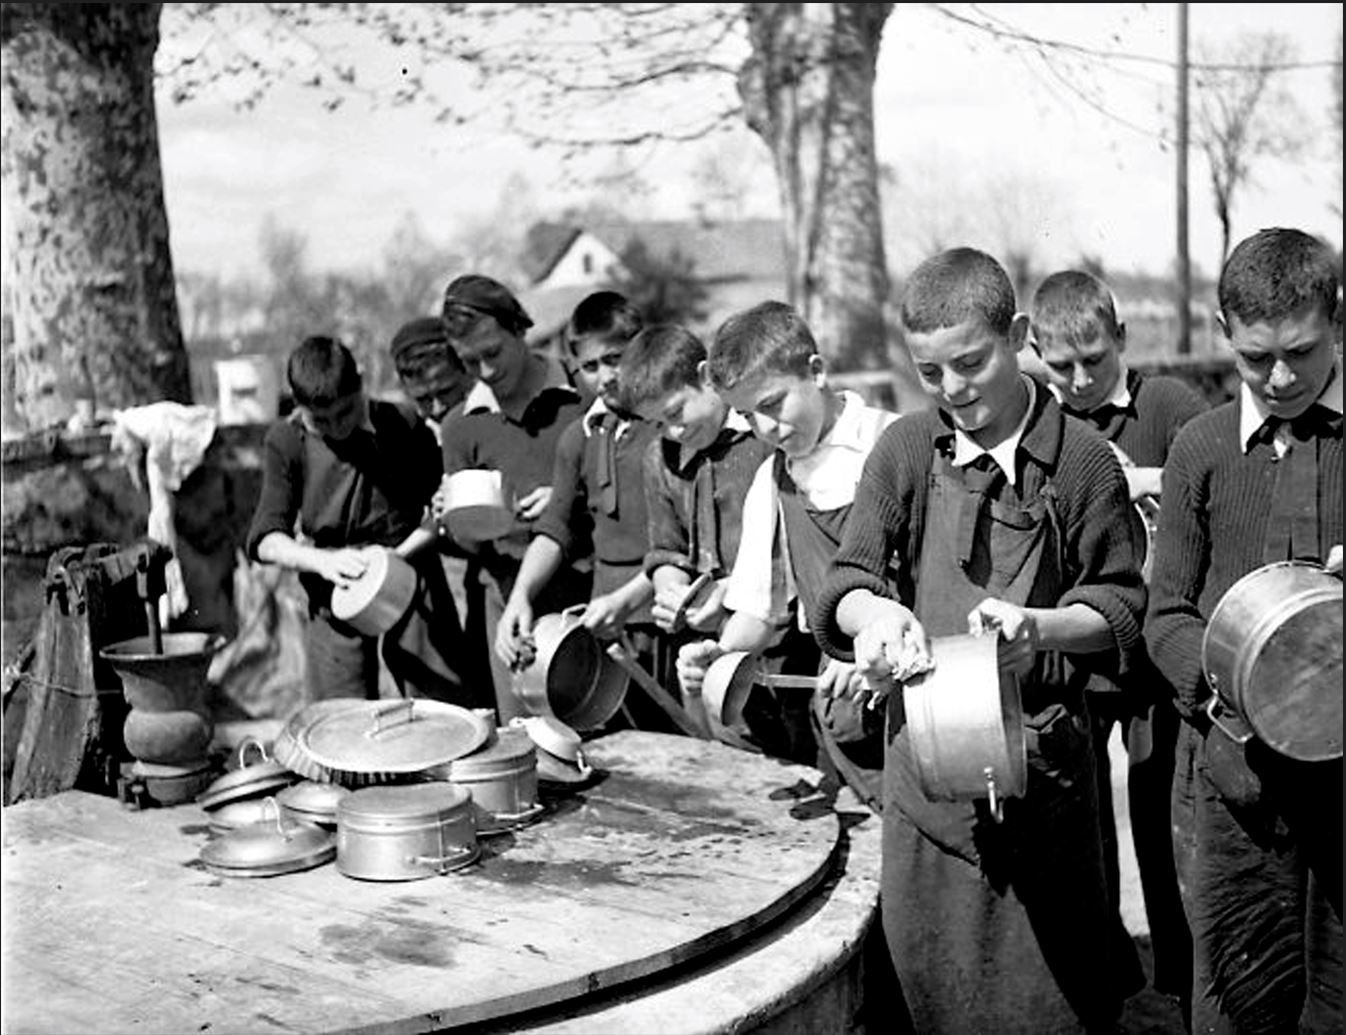 Una colònia infantil no identificada, la primavera del 1940. Seguia el model scout i els infants s'organitzaven en famílies de quinze